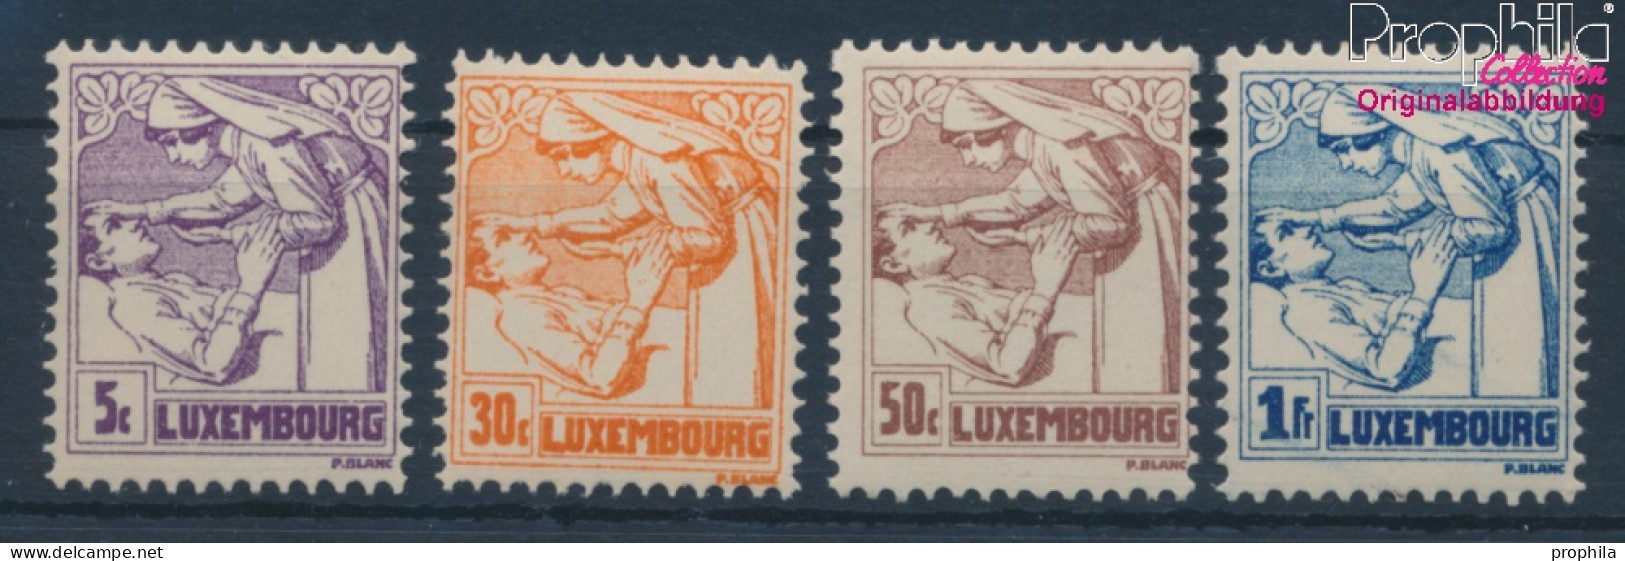 Luxemburg 157-160 (kompl.Ausg.) Postfrisch 1925 Tuberkulose (10362785 - Ungebraucht